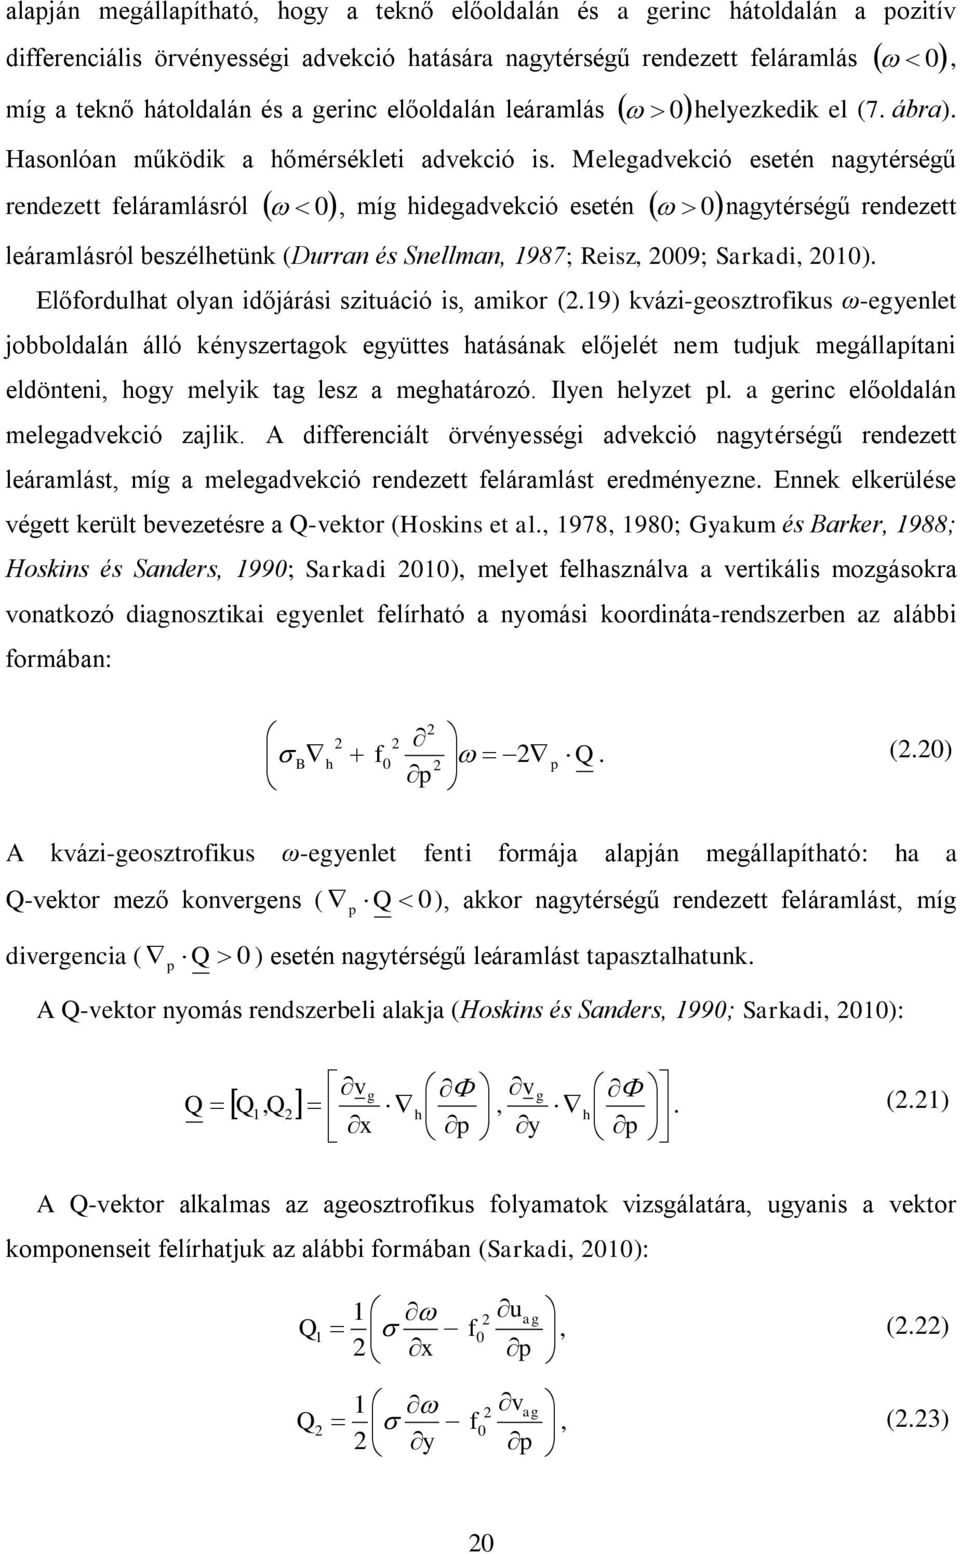 Melegadvekció esetén nagytérségű rendezett feláramlásról 0, míg hidegadvekció esetén 0nagytérségű rendezett leáramlásról beszélhetünk (Durran és Snellman, 1987; Reisz, 009; Sarkadi, 010).